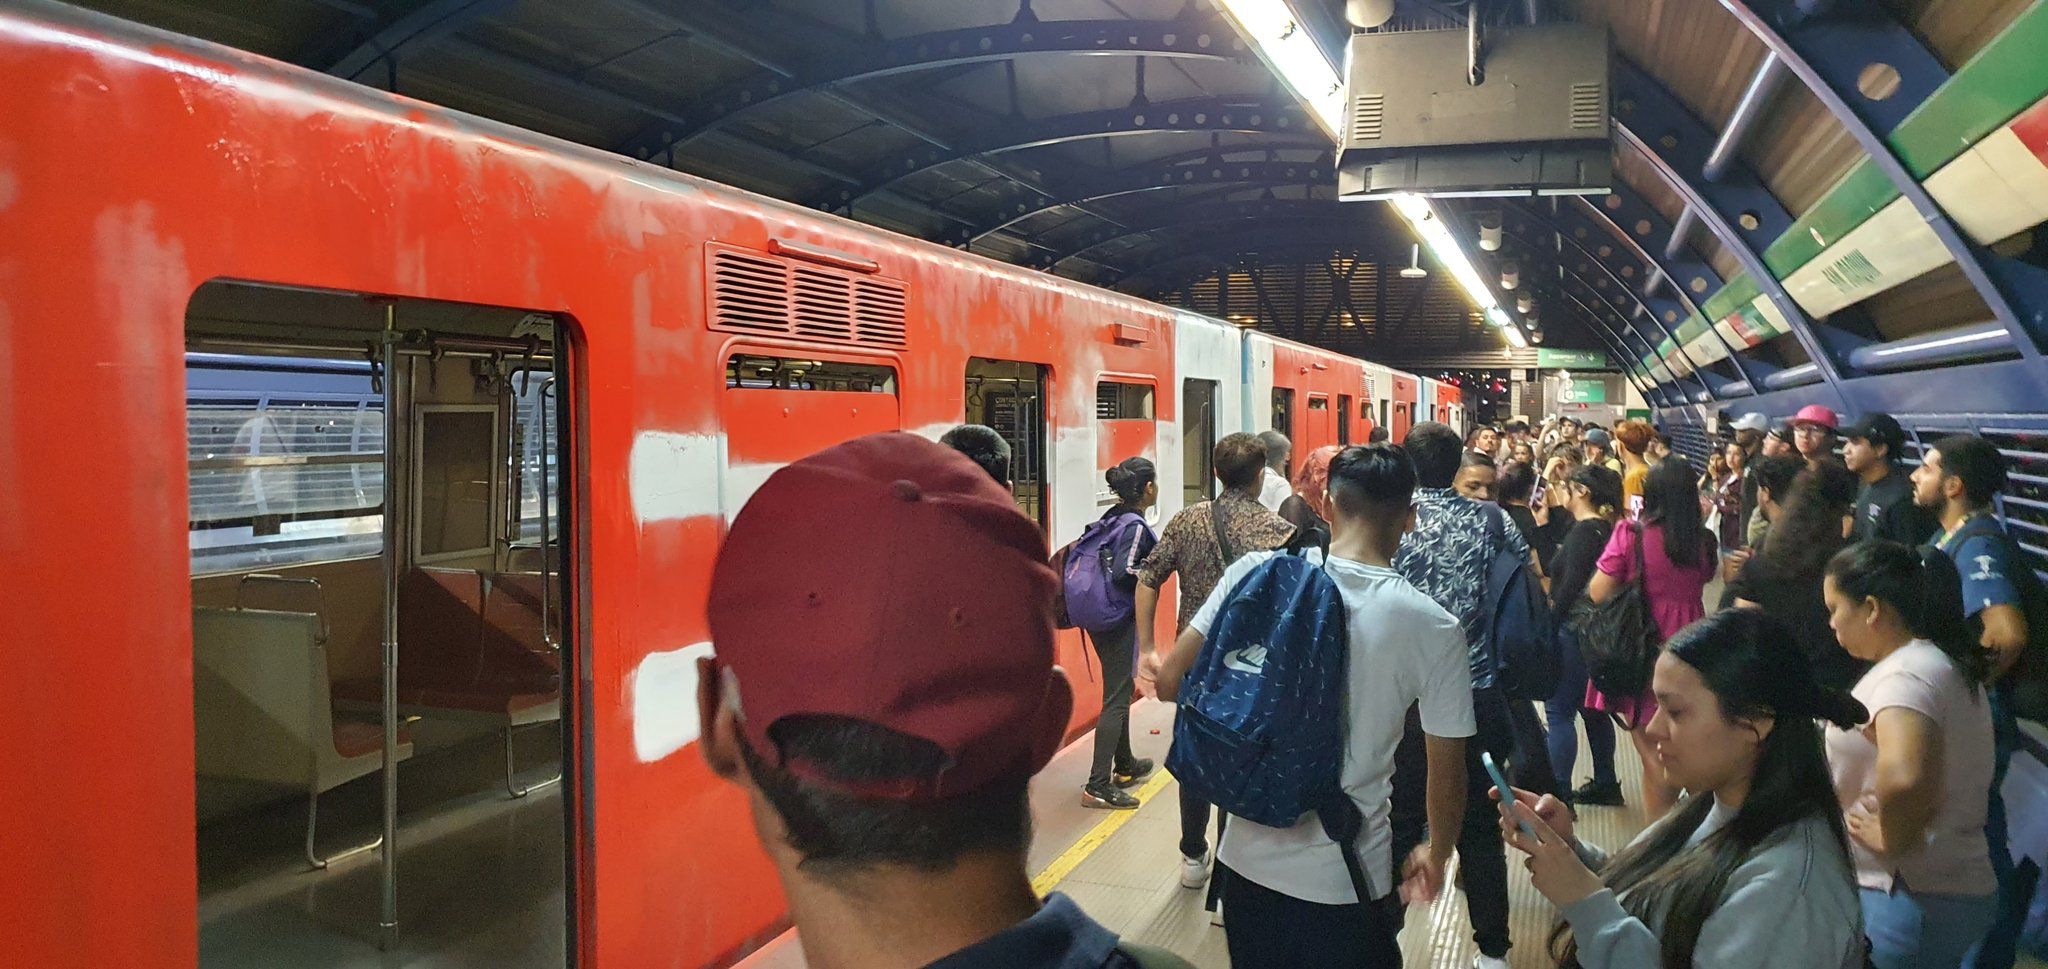 ataques de pánico y querella en curso: los nueve minutos en que más de 30 sujetos rayaron violentamente el metro